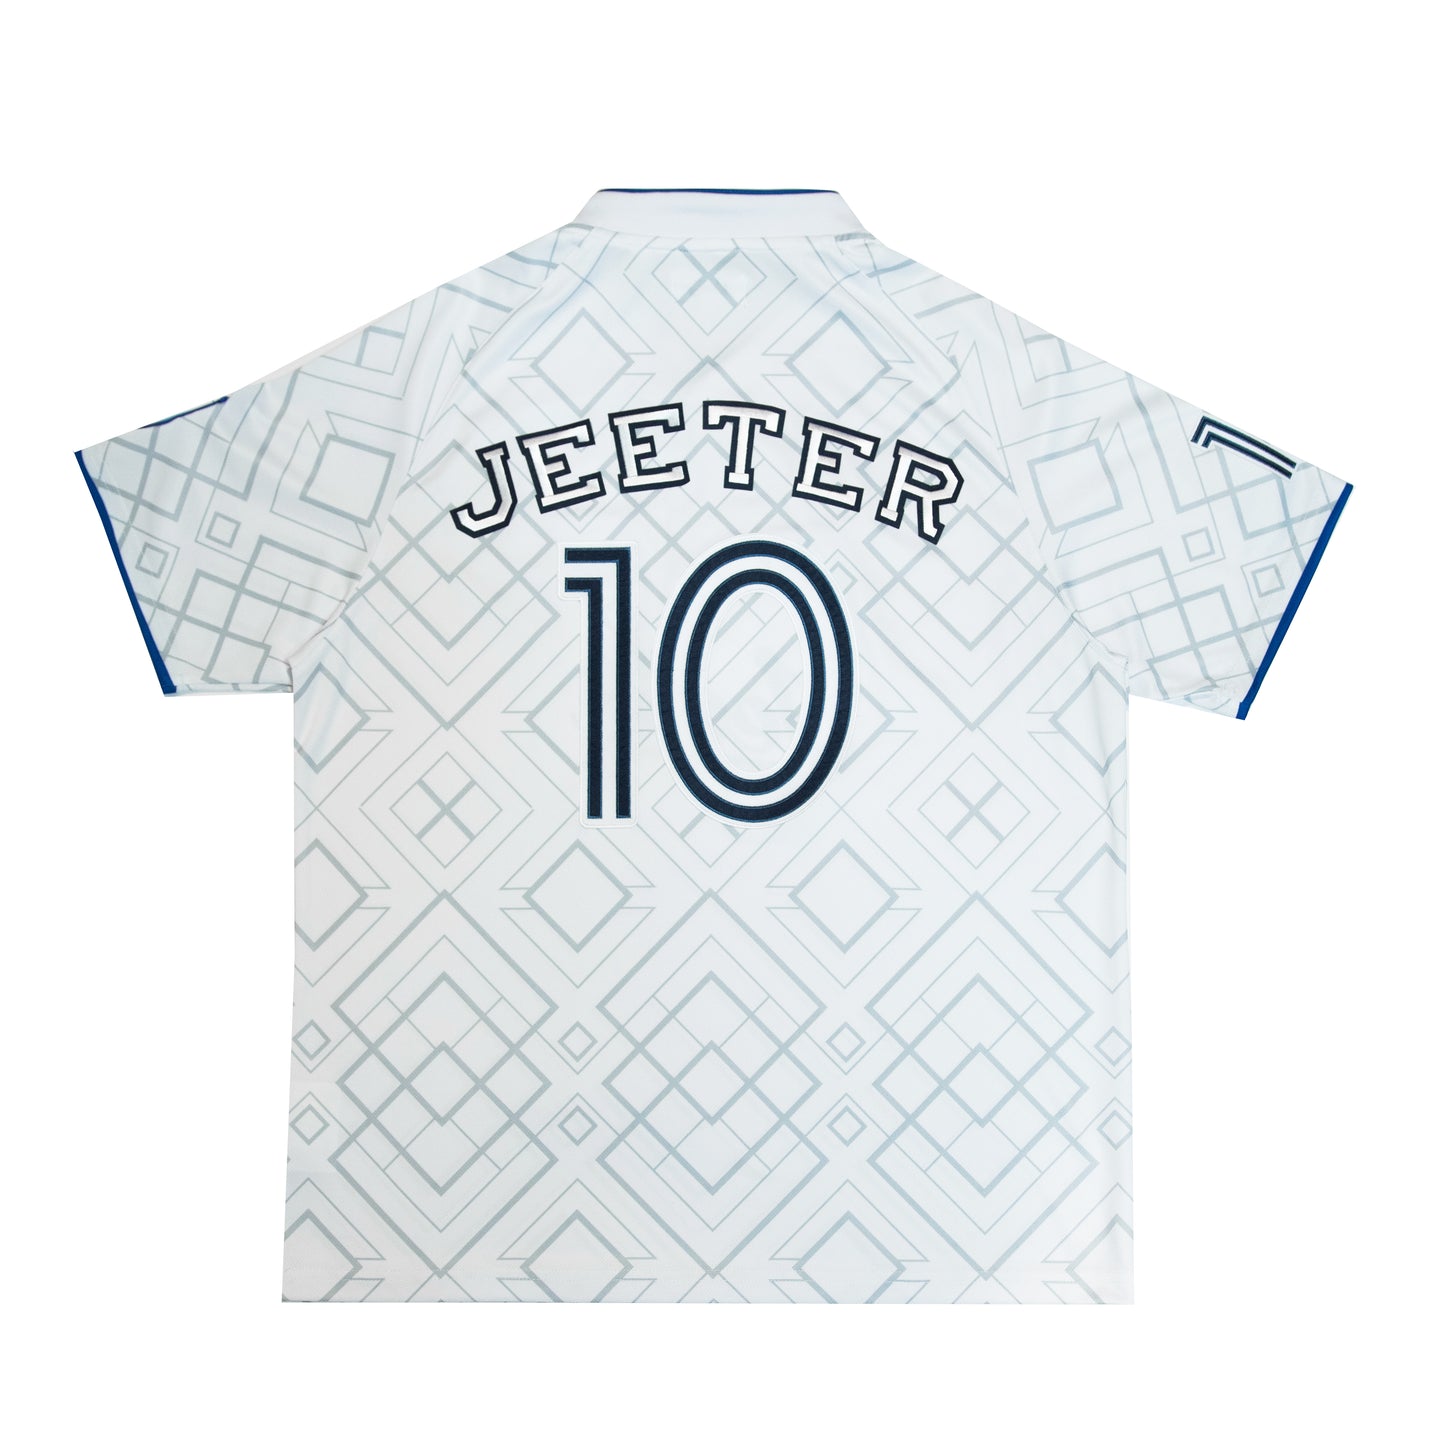 Jeeter FC Jersey